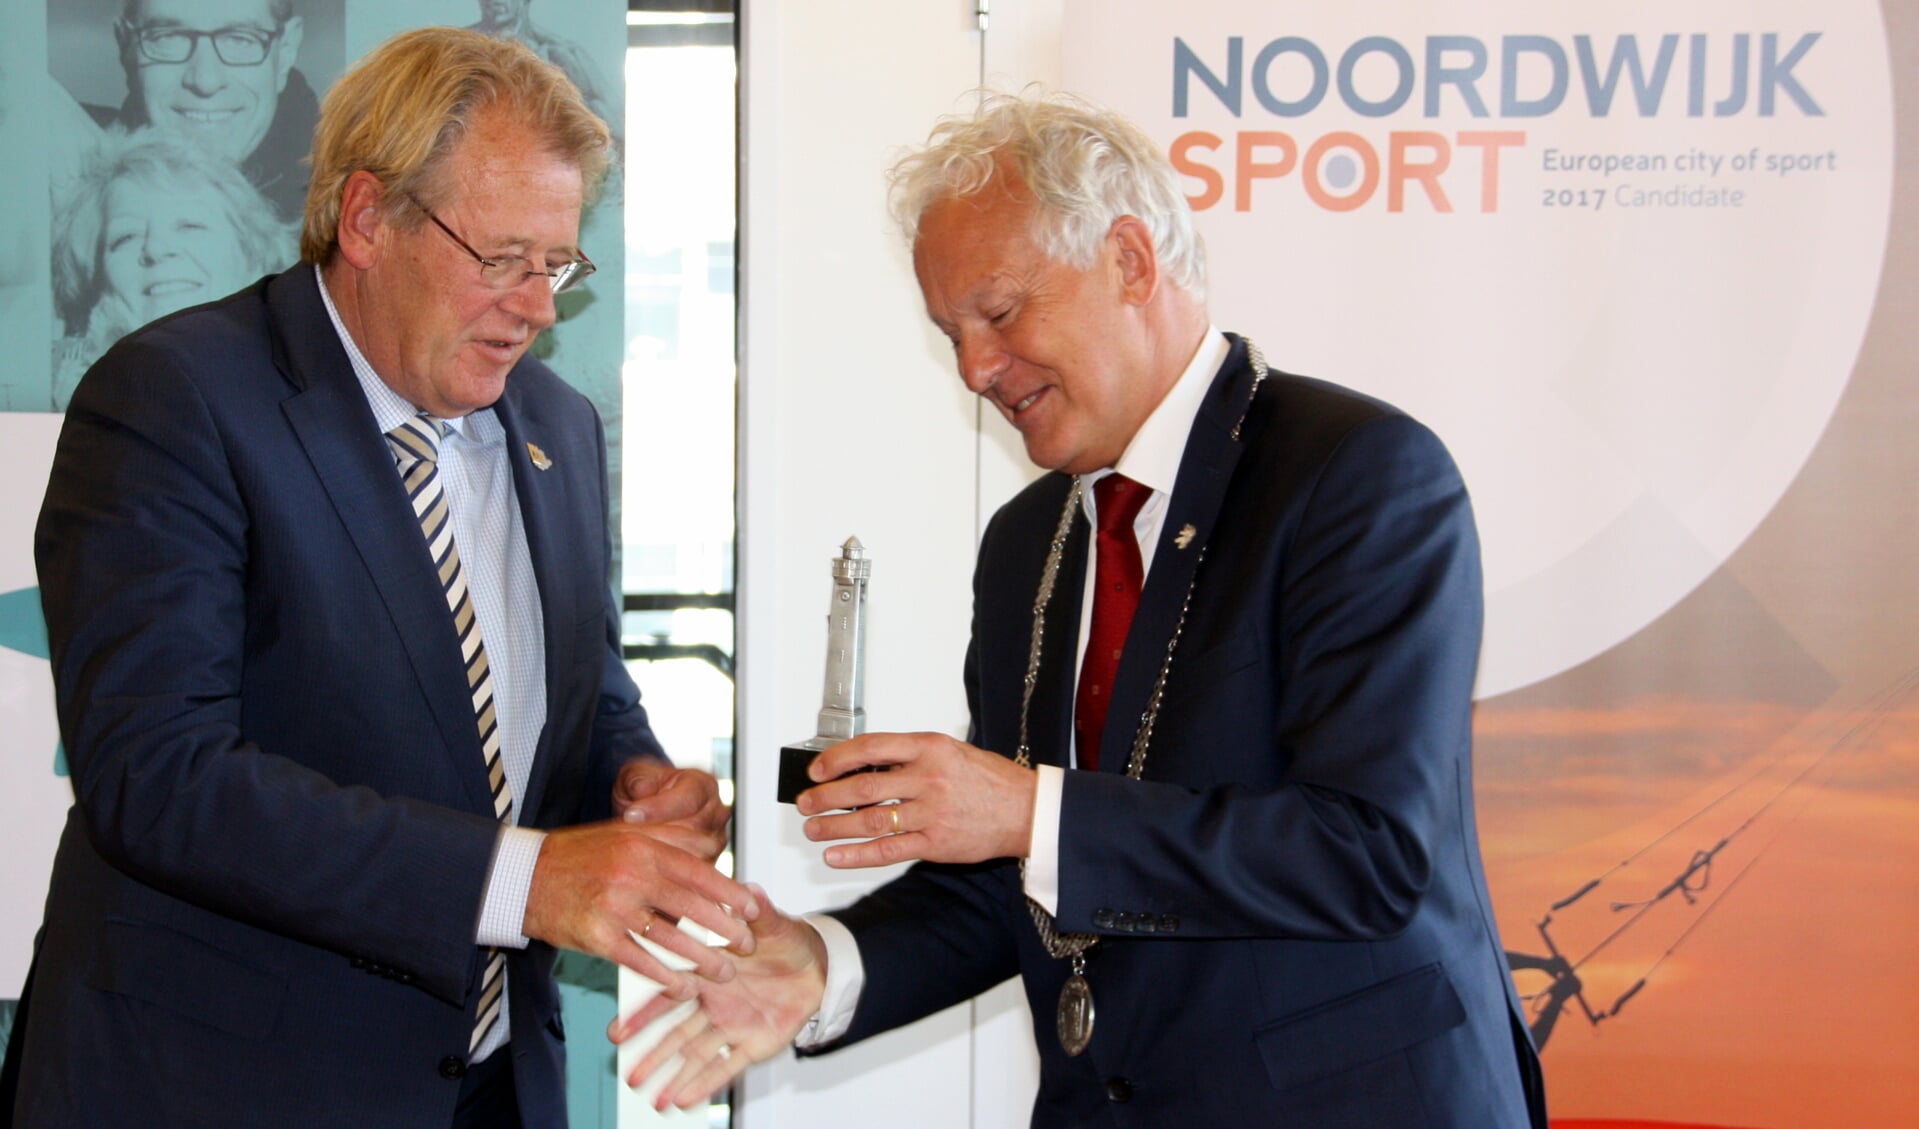 Burgemeester Rijpstra overhandigt Jaap Smit een Zilveren Vuurtoren als  erkentelijkheid voor zijn bezoek. | Foto: Wim Siemerink